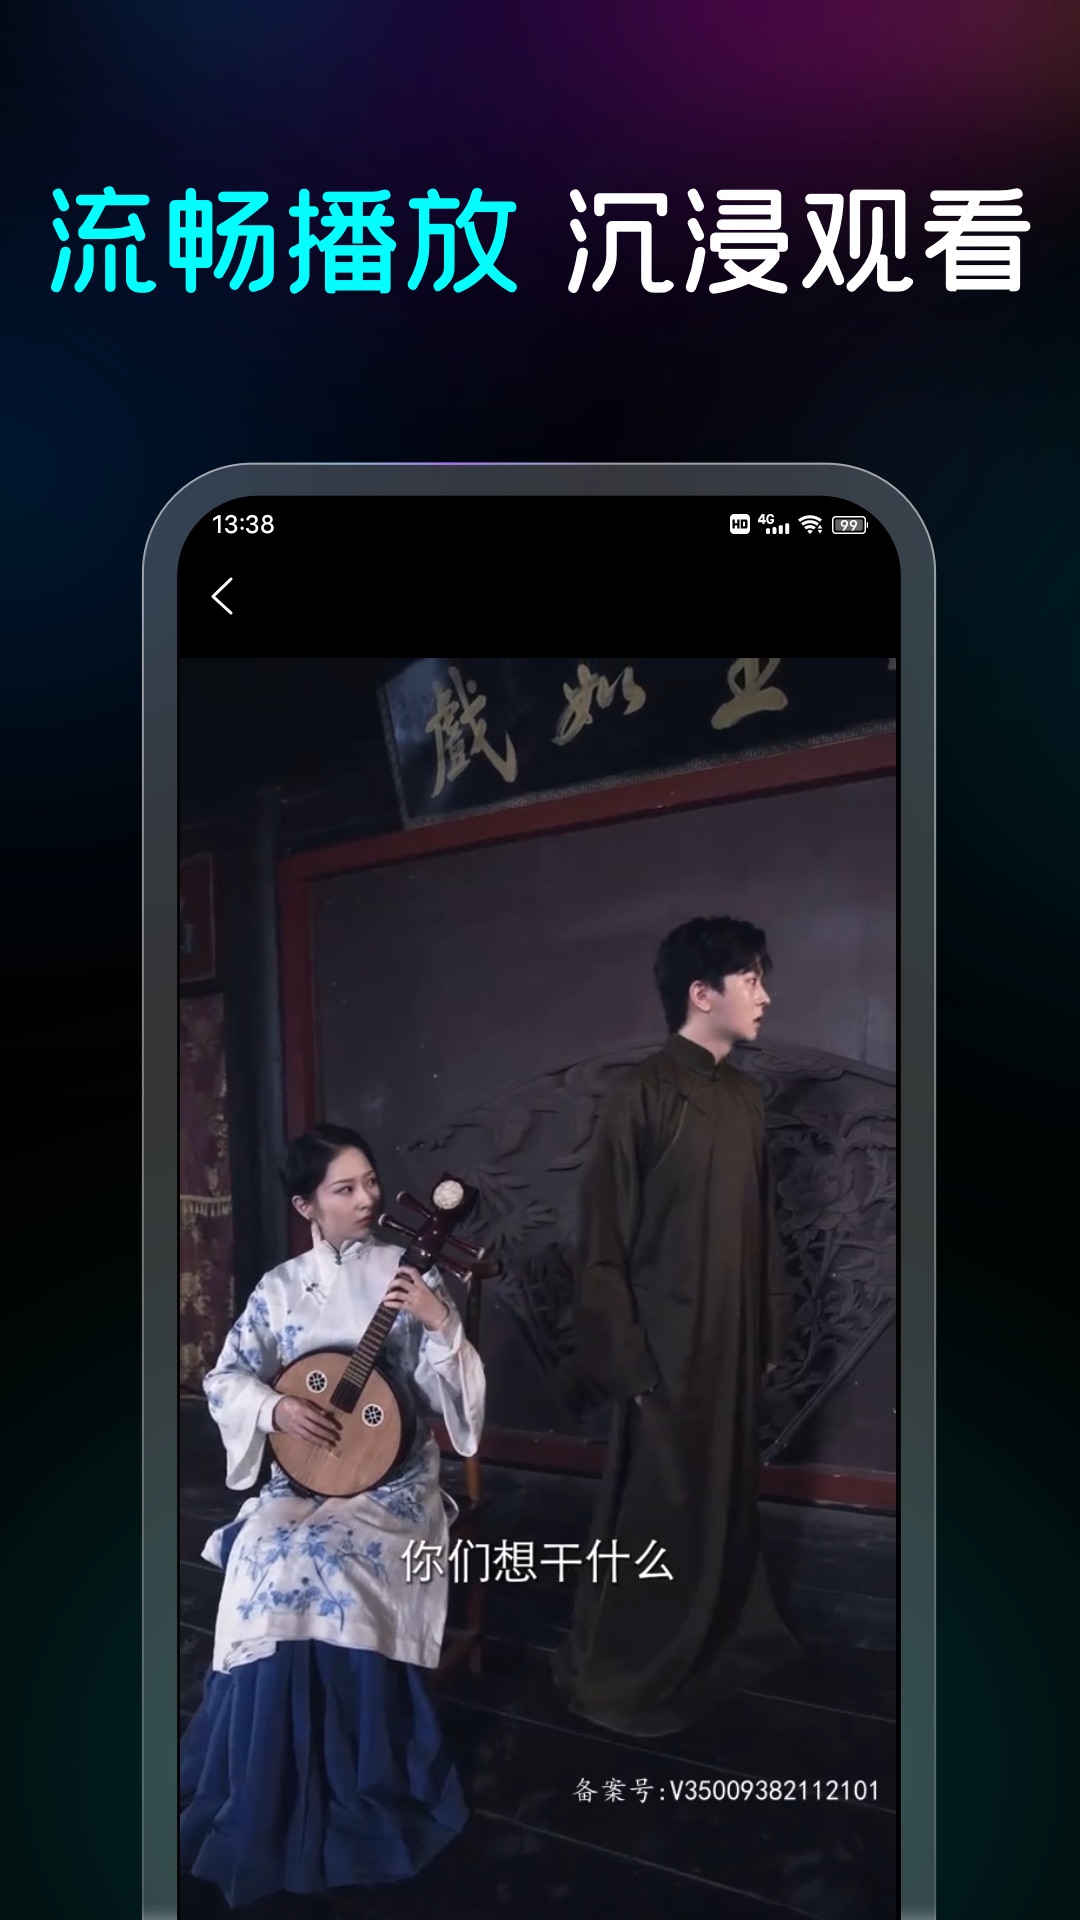 阳光剧场app下载,阳光剧场app最新版 v1.0